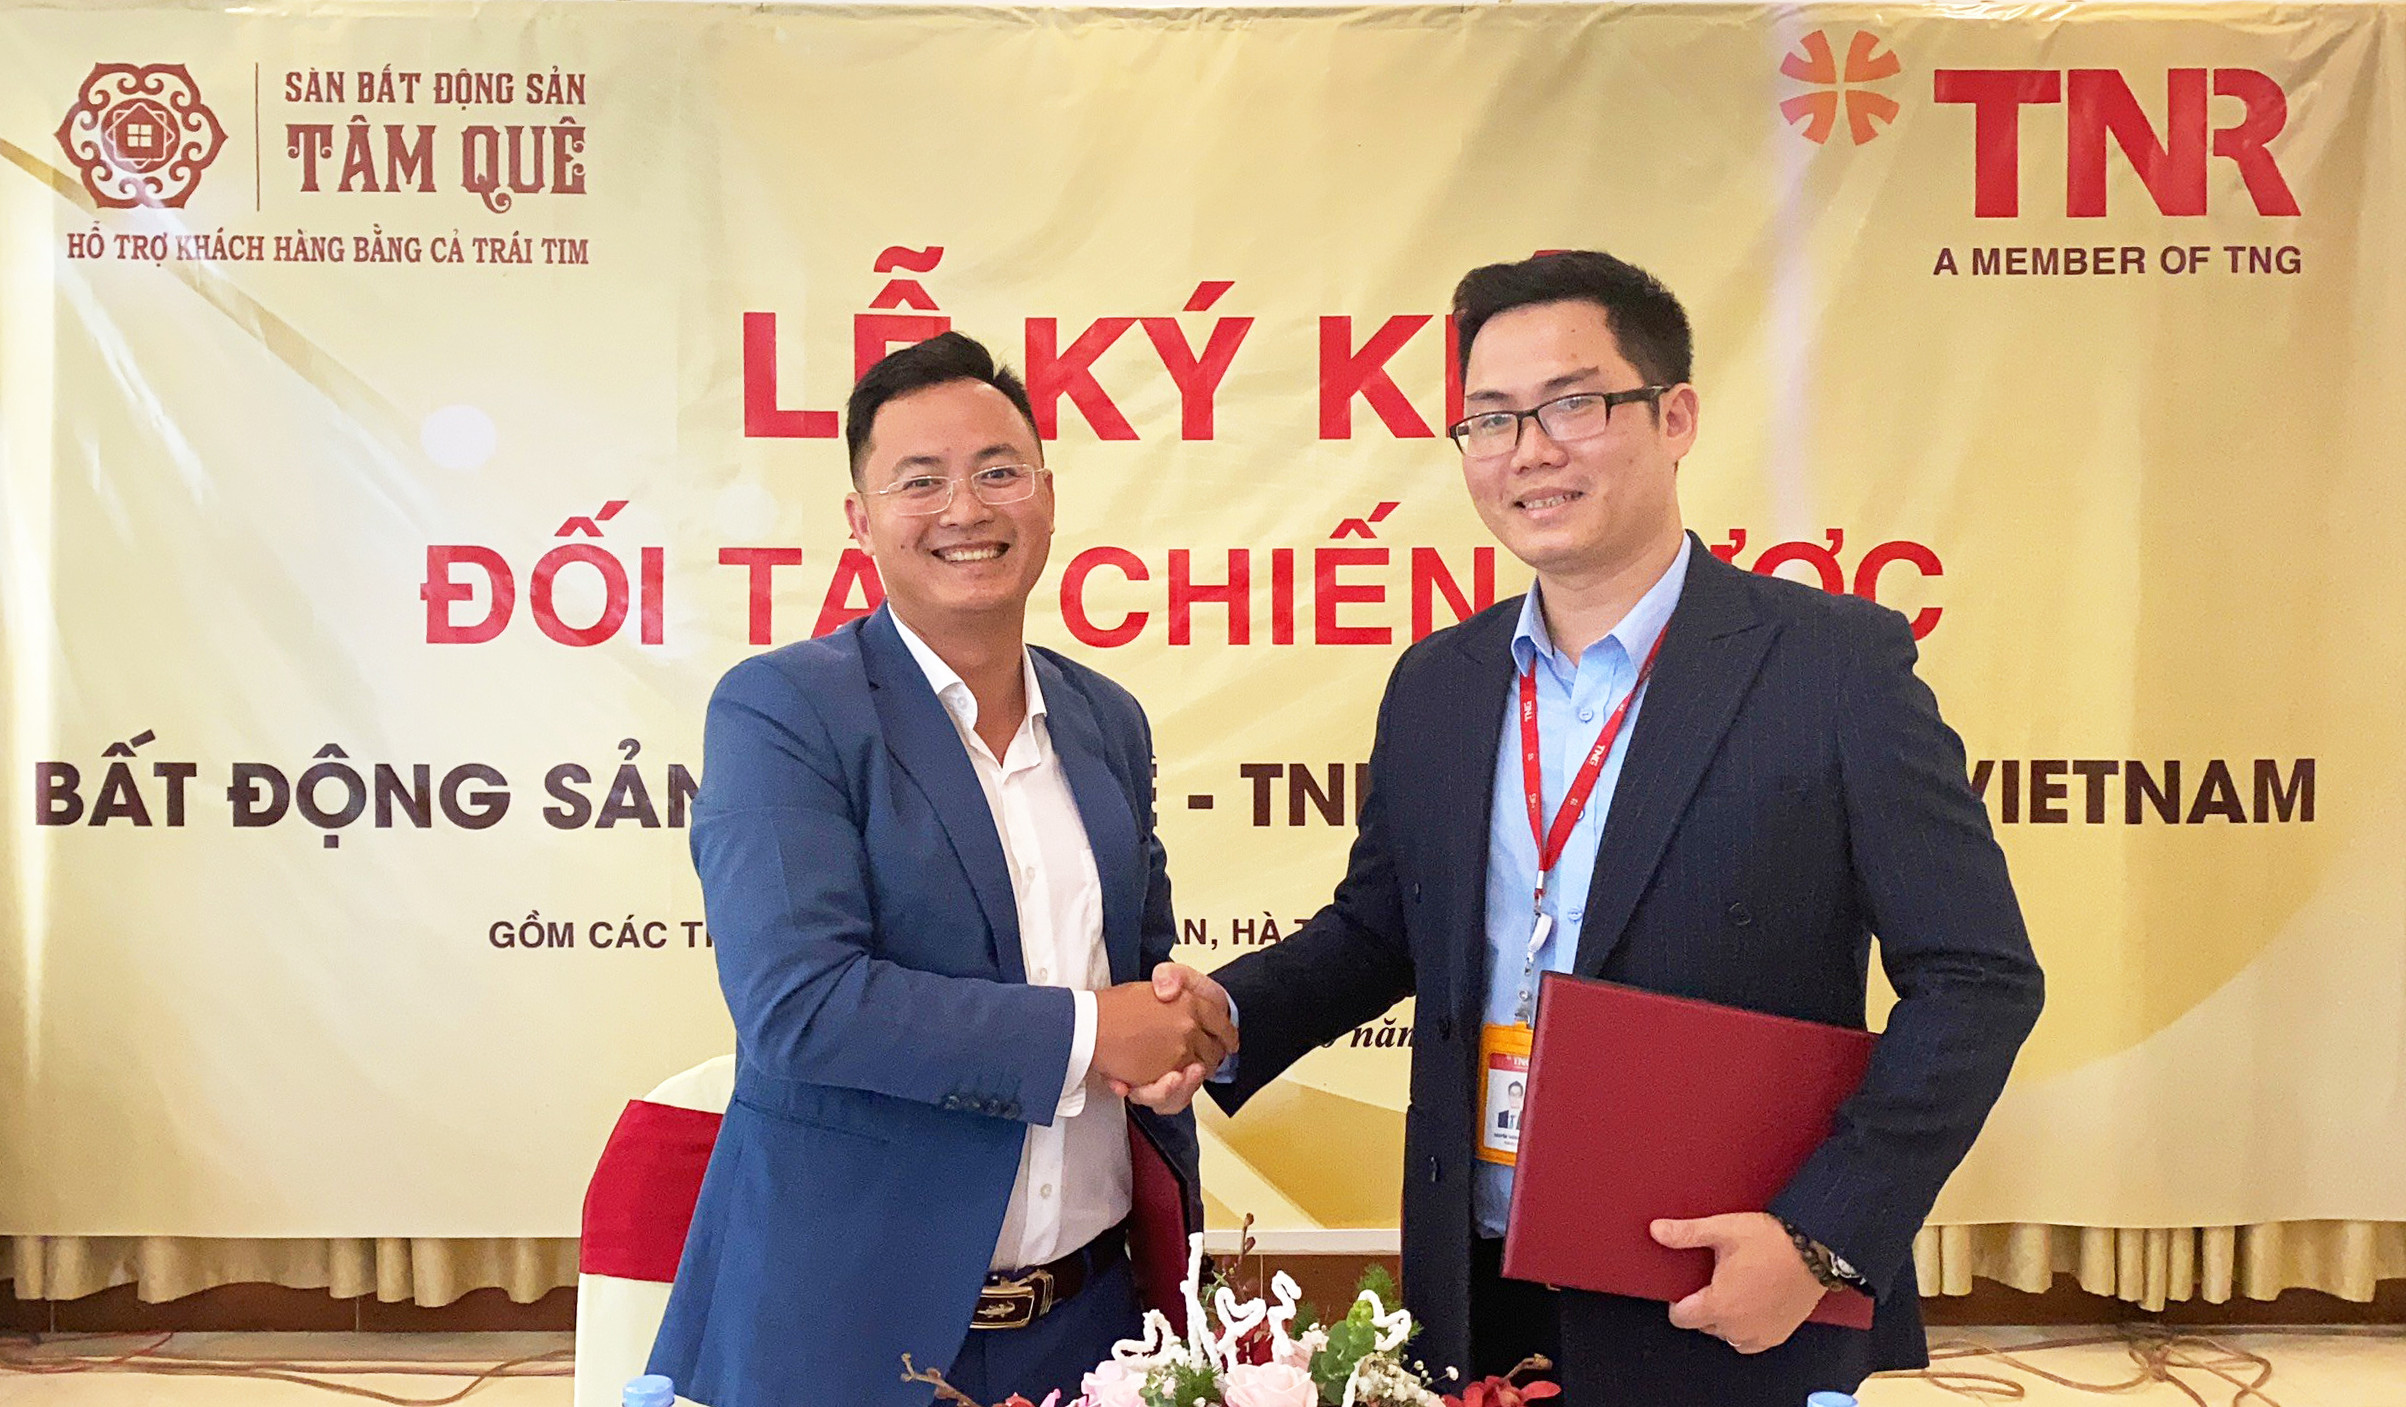 Ông Đặng Trung Kiên - Tổng Giám đốc Sàn BĐS Tâm Quê và ông Nguyễn Thành Trung – Giám đốc Quản lý Marketing TNR Holdings Vietnam ký kết hợp tác chiến lược giữa hai đơn vị. Ảnh: PV